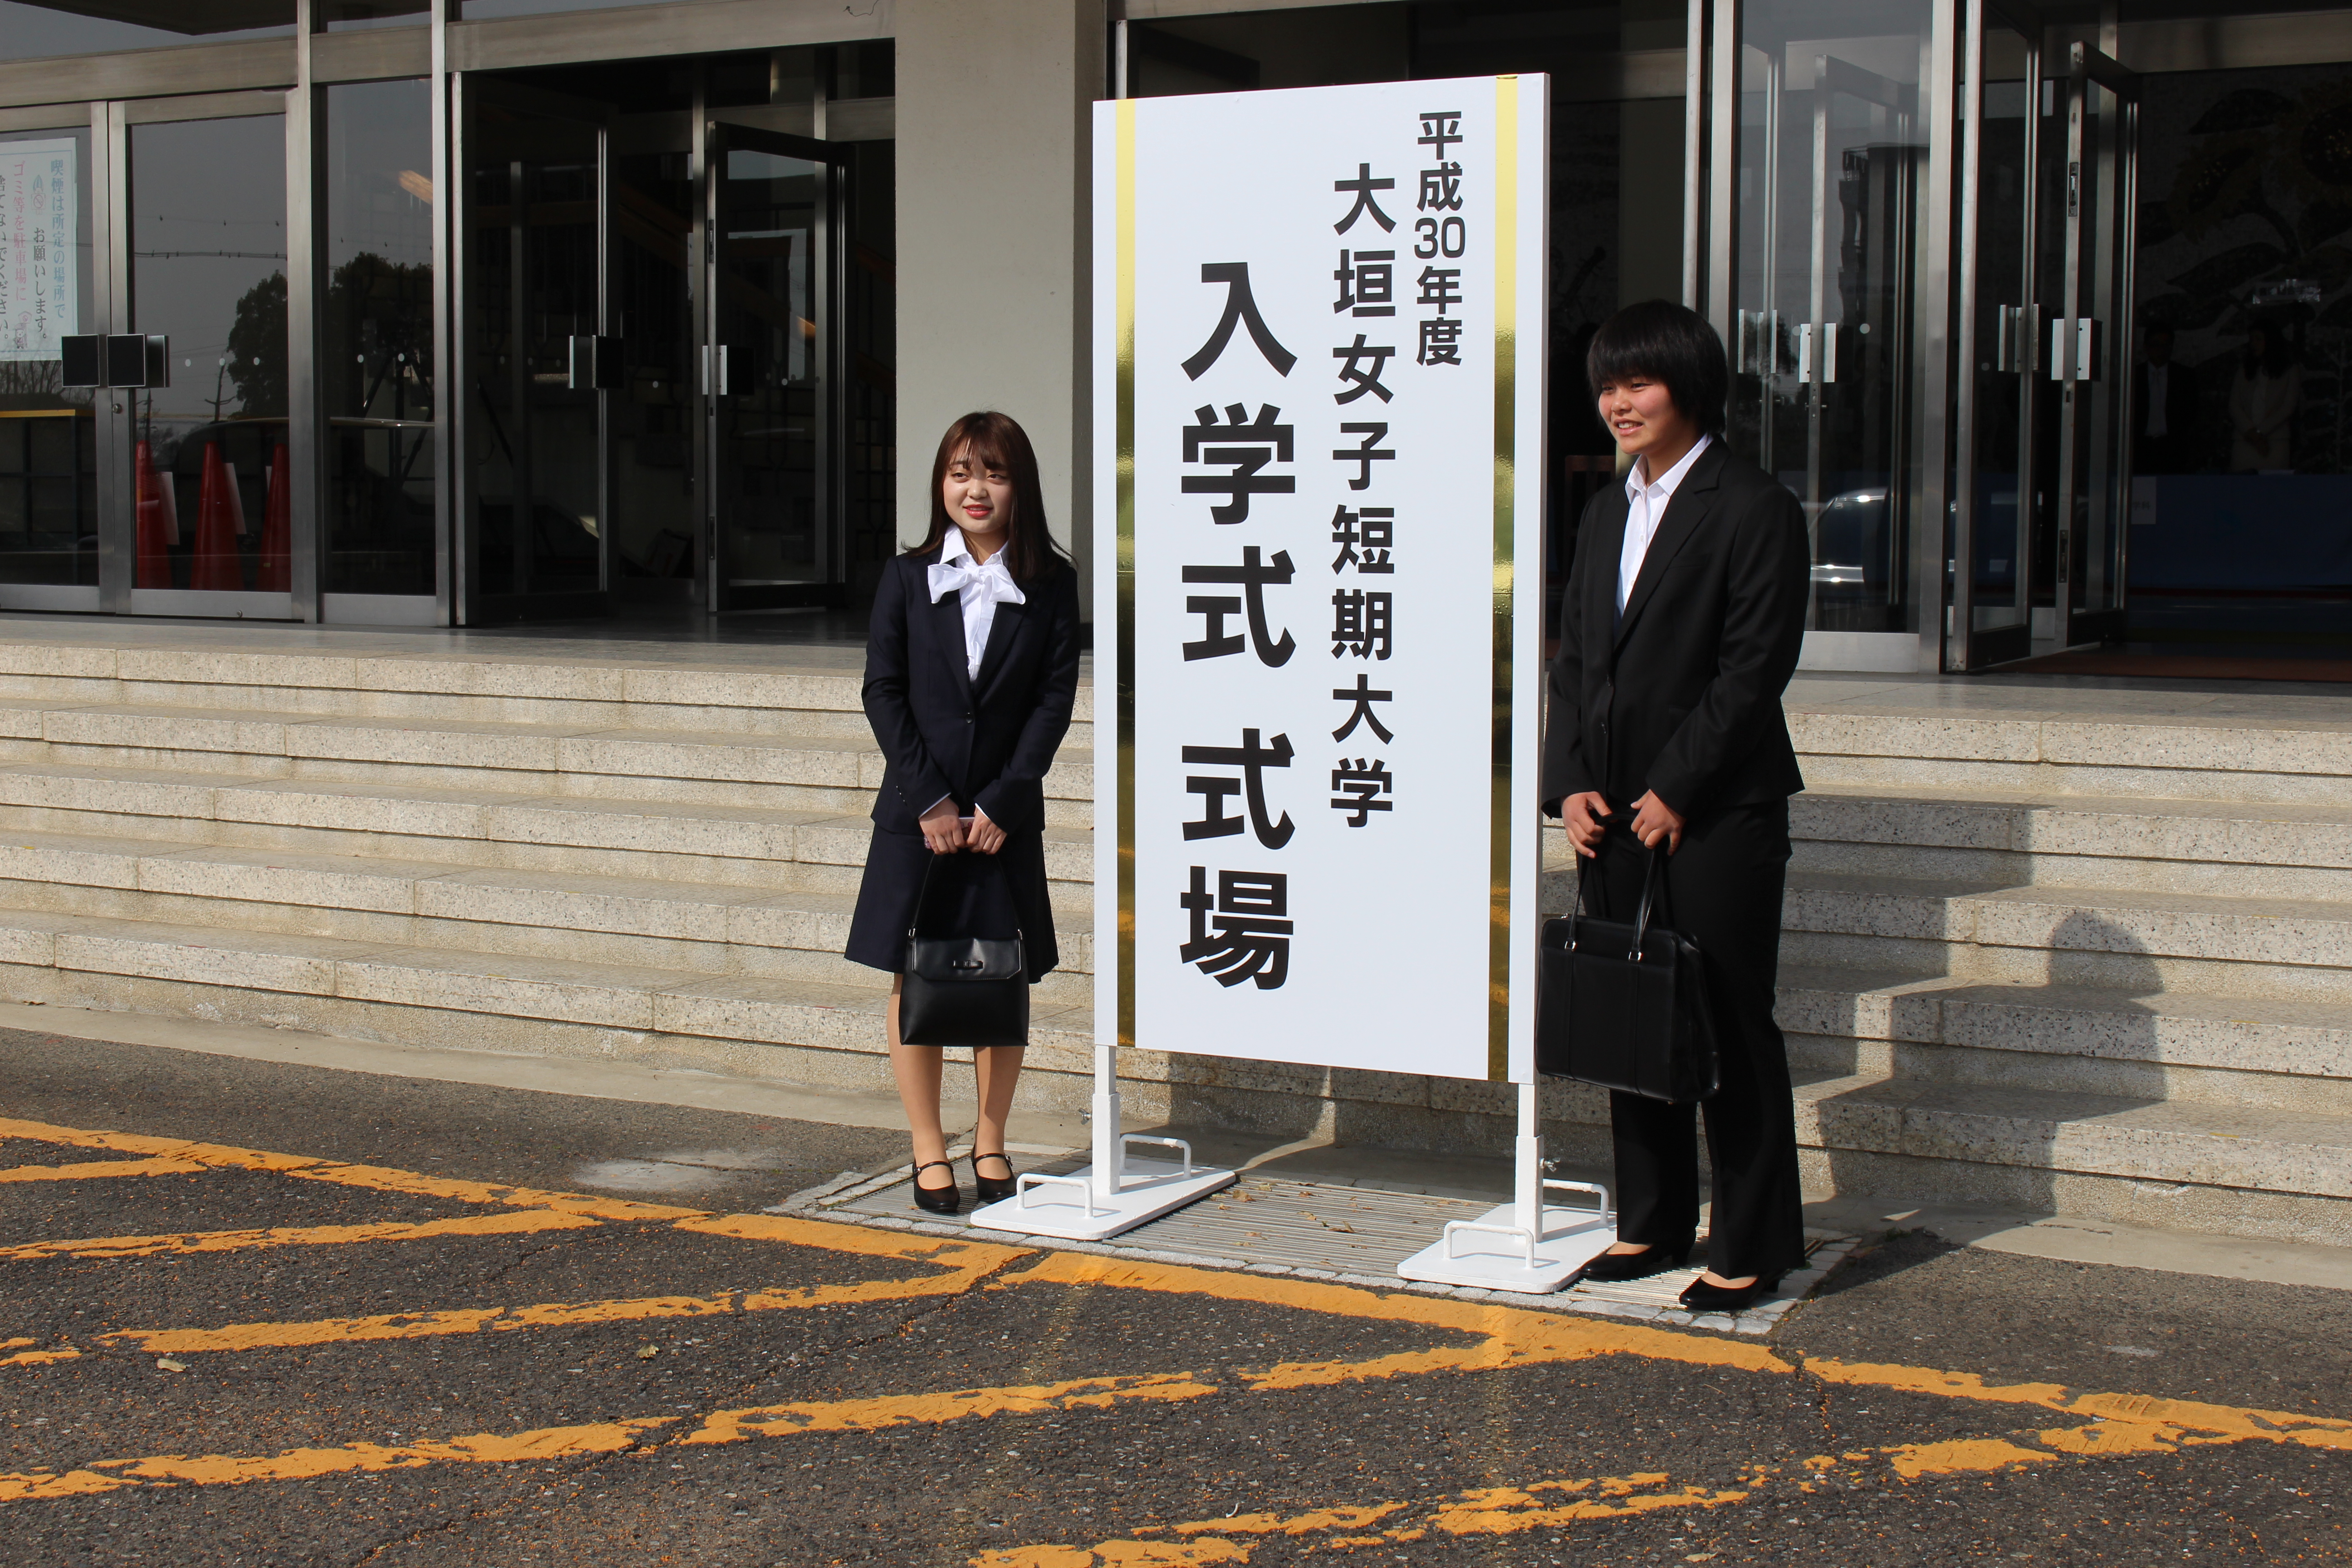 4月1日 日 平成30年度 入学式が挙行されました 大垣女子短期大学